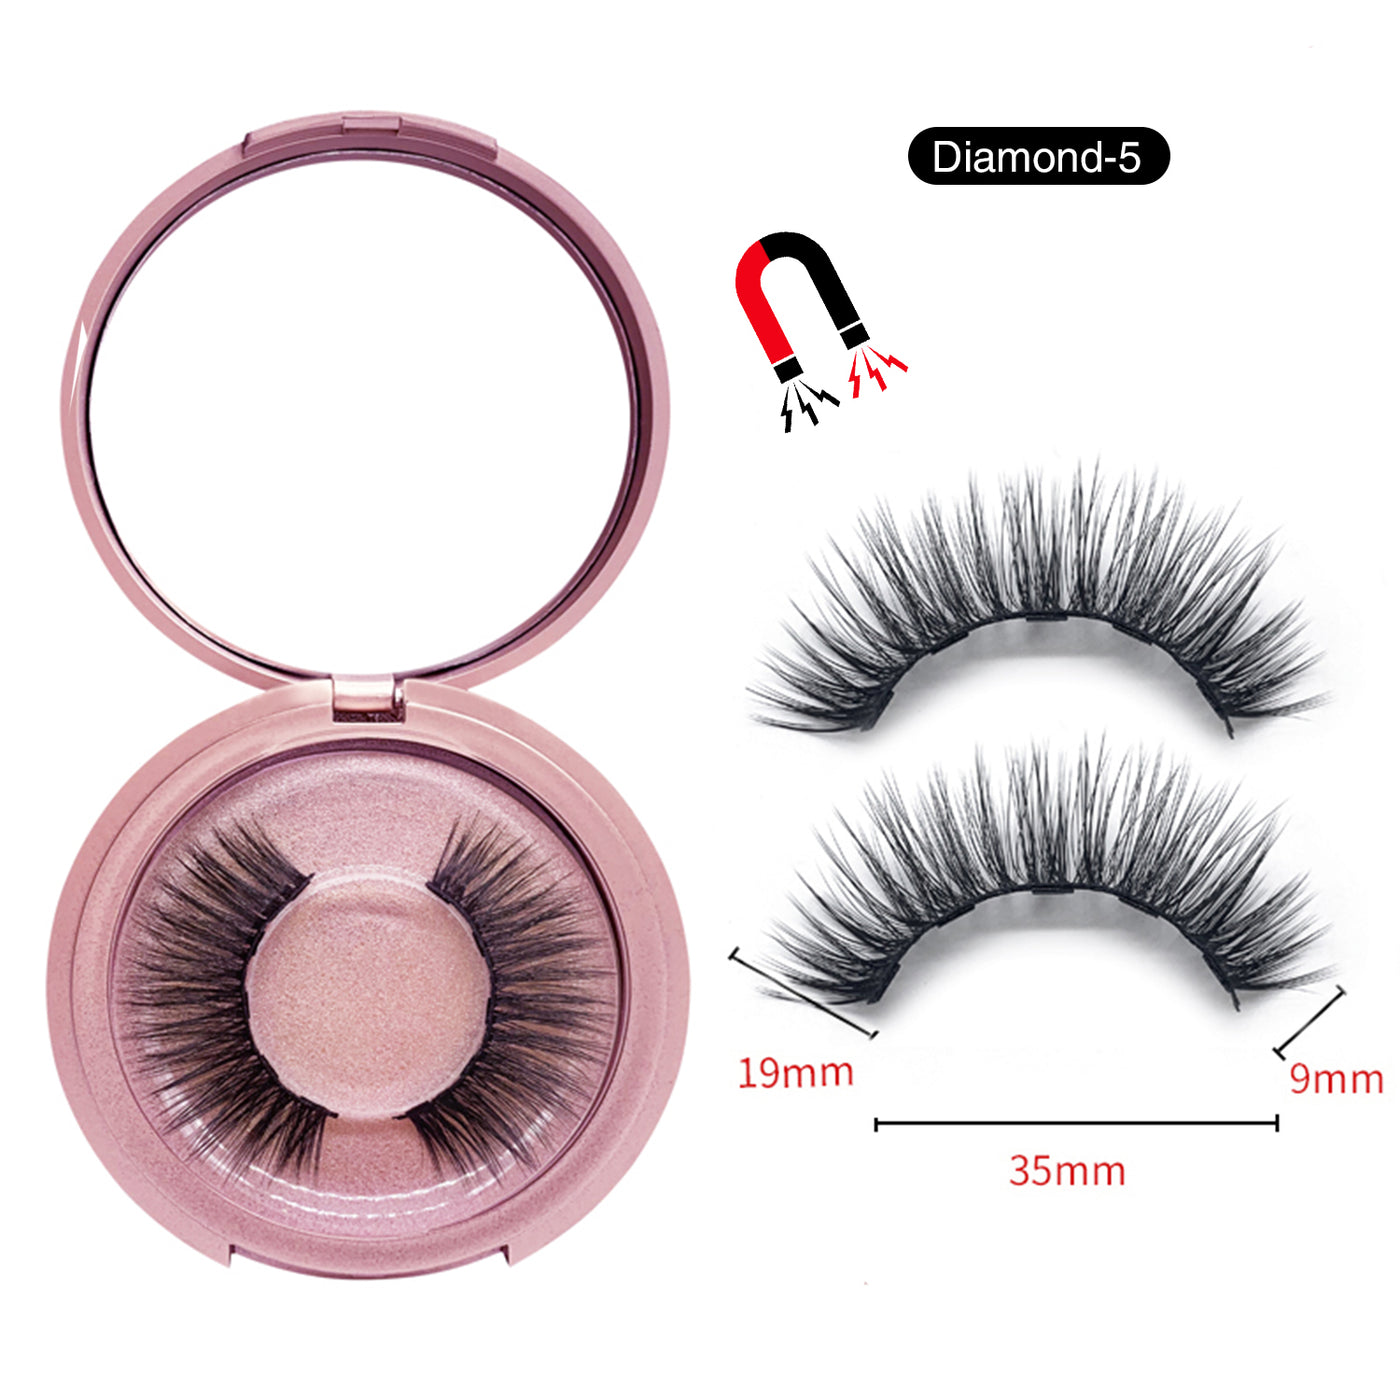 Magnetic Eyelashes with Eyeliner Kit Diamond-5 (4603675672664)